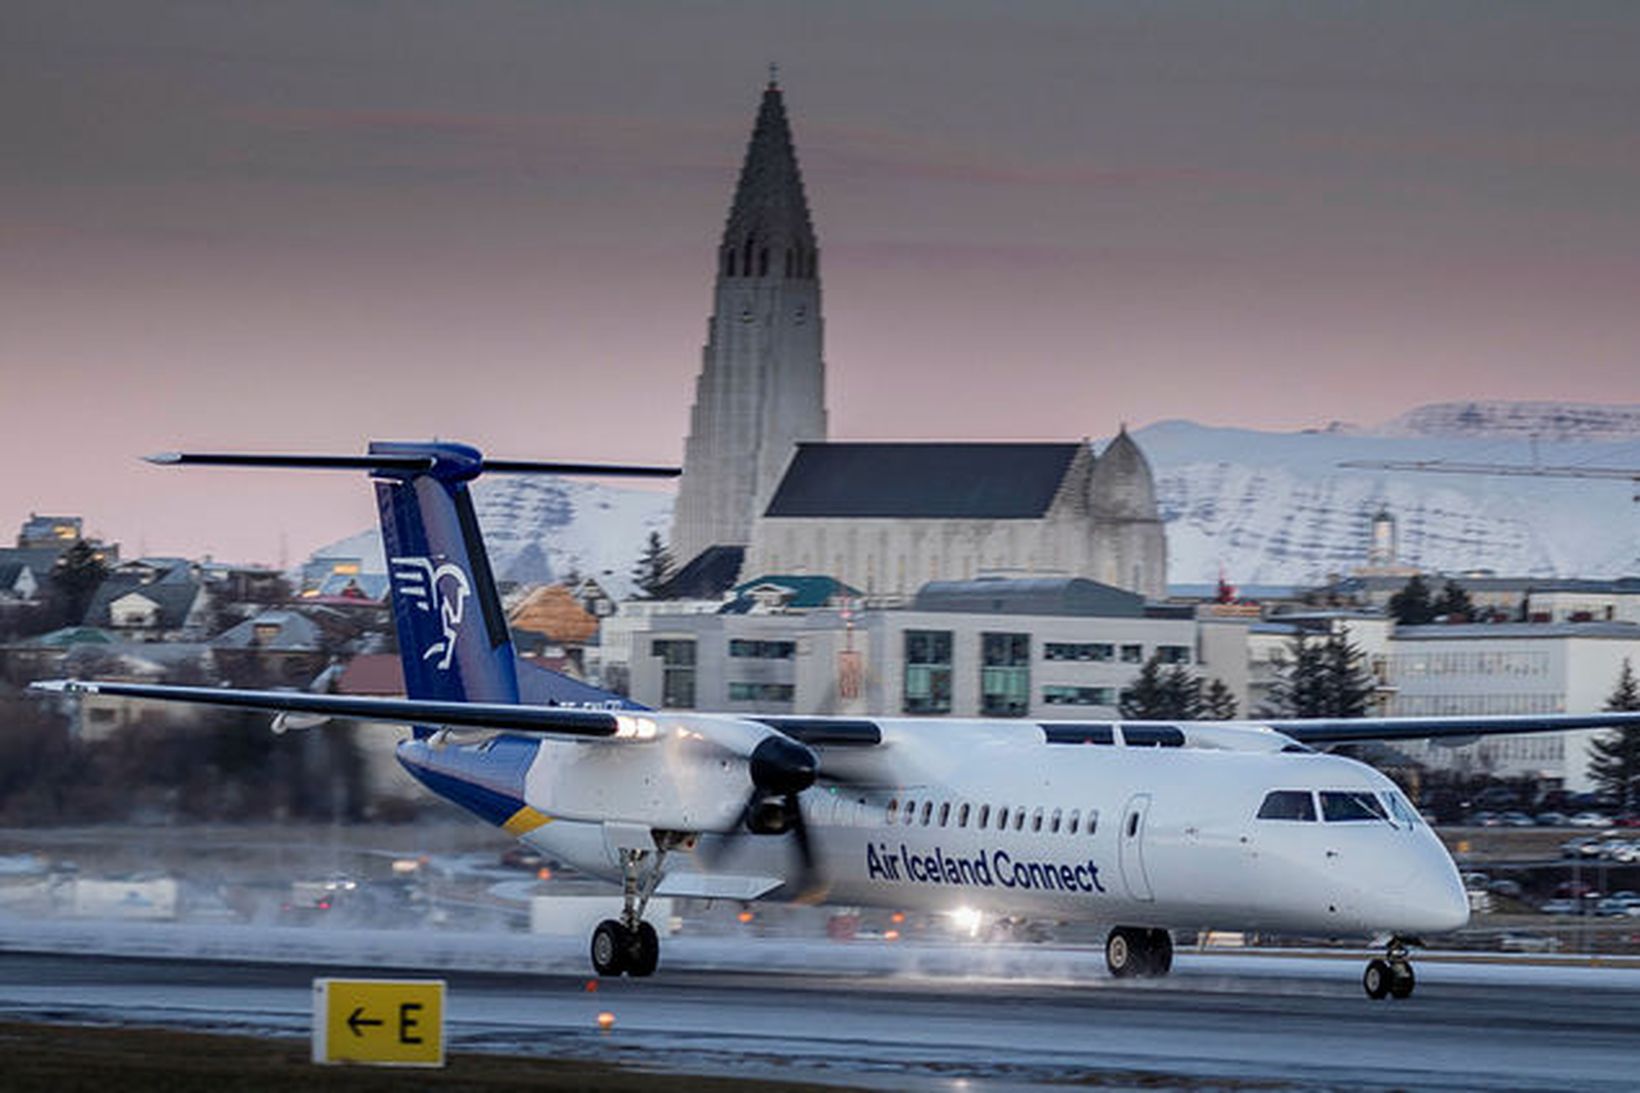 Flugvél Air Iceland Connect á Reykjavíkurflugvelli. Mynd úr safni.